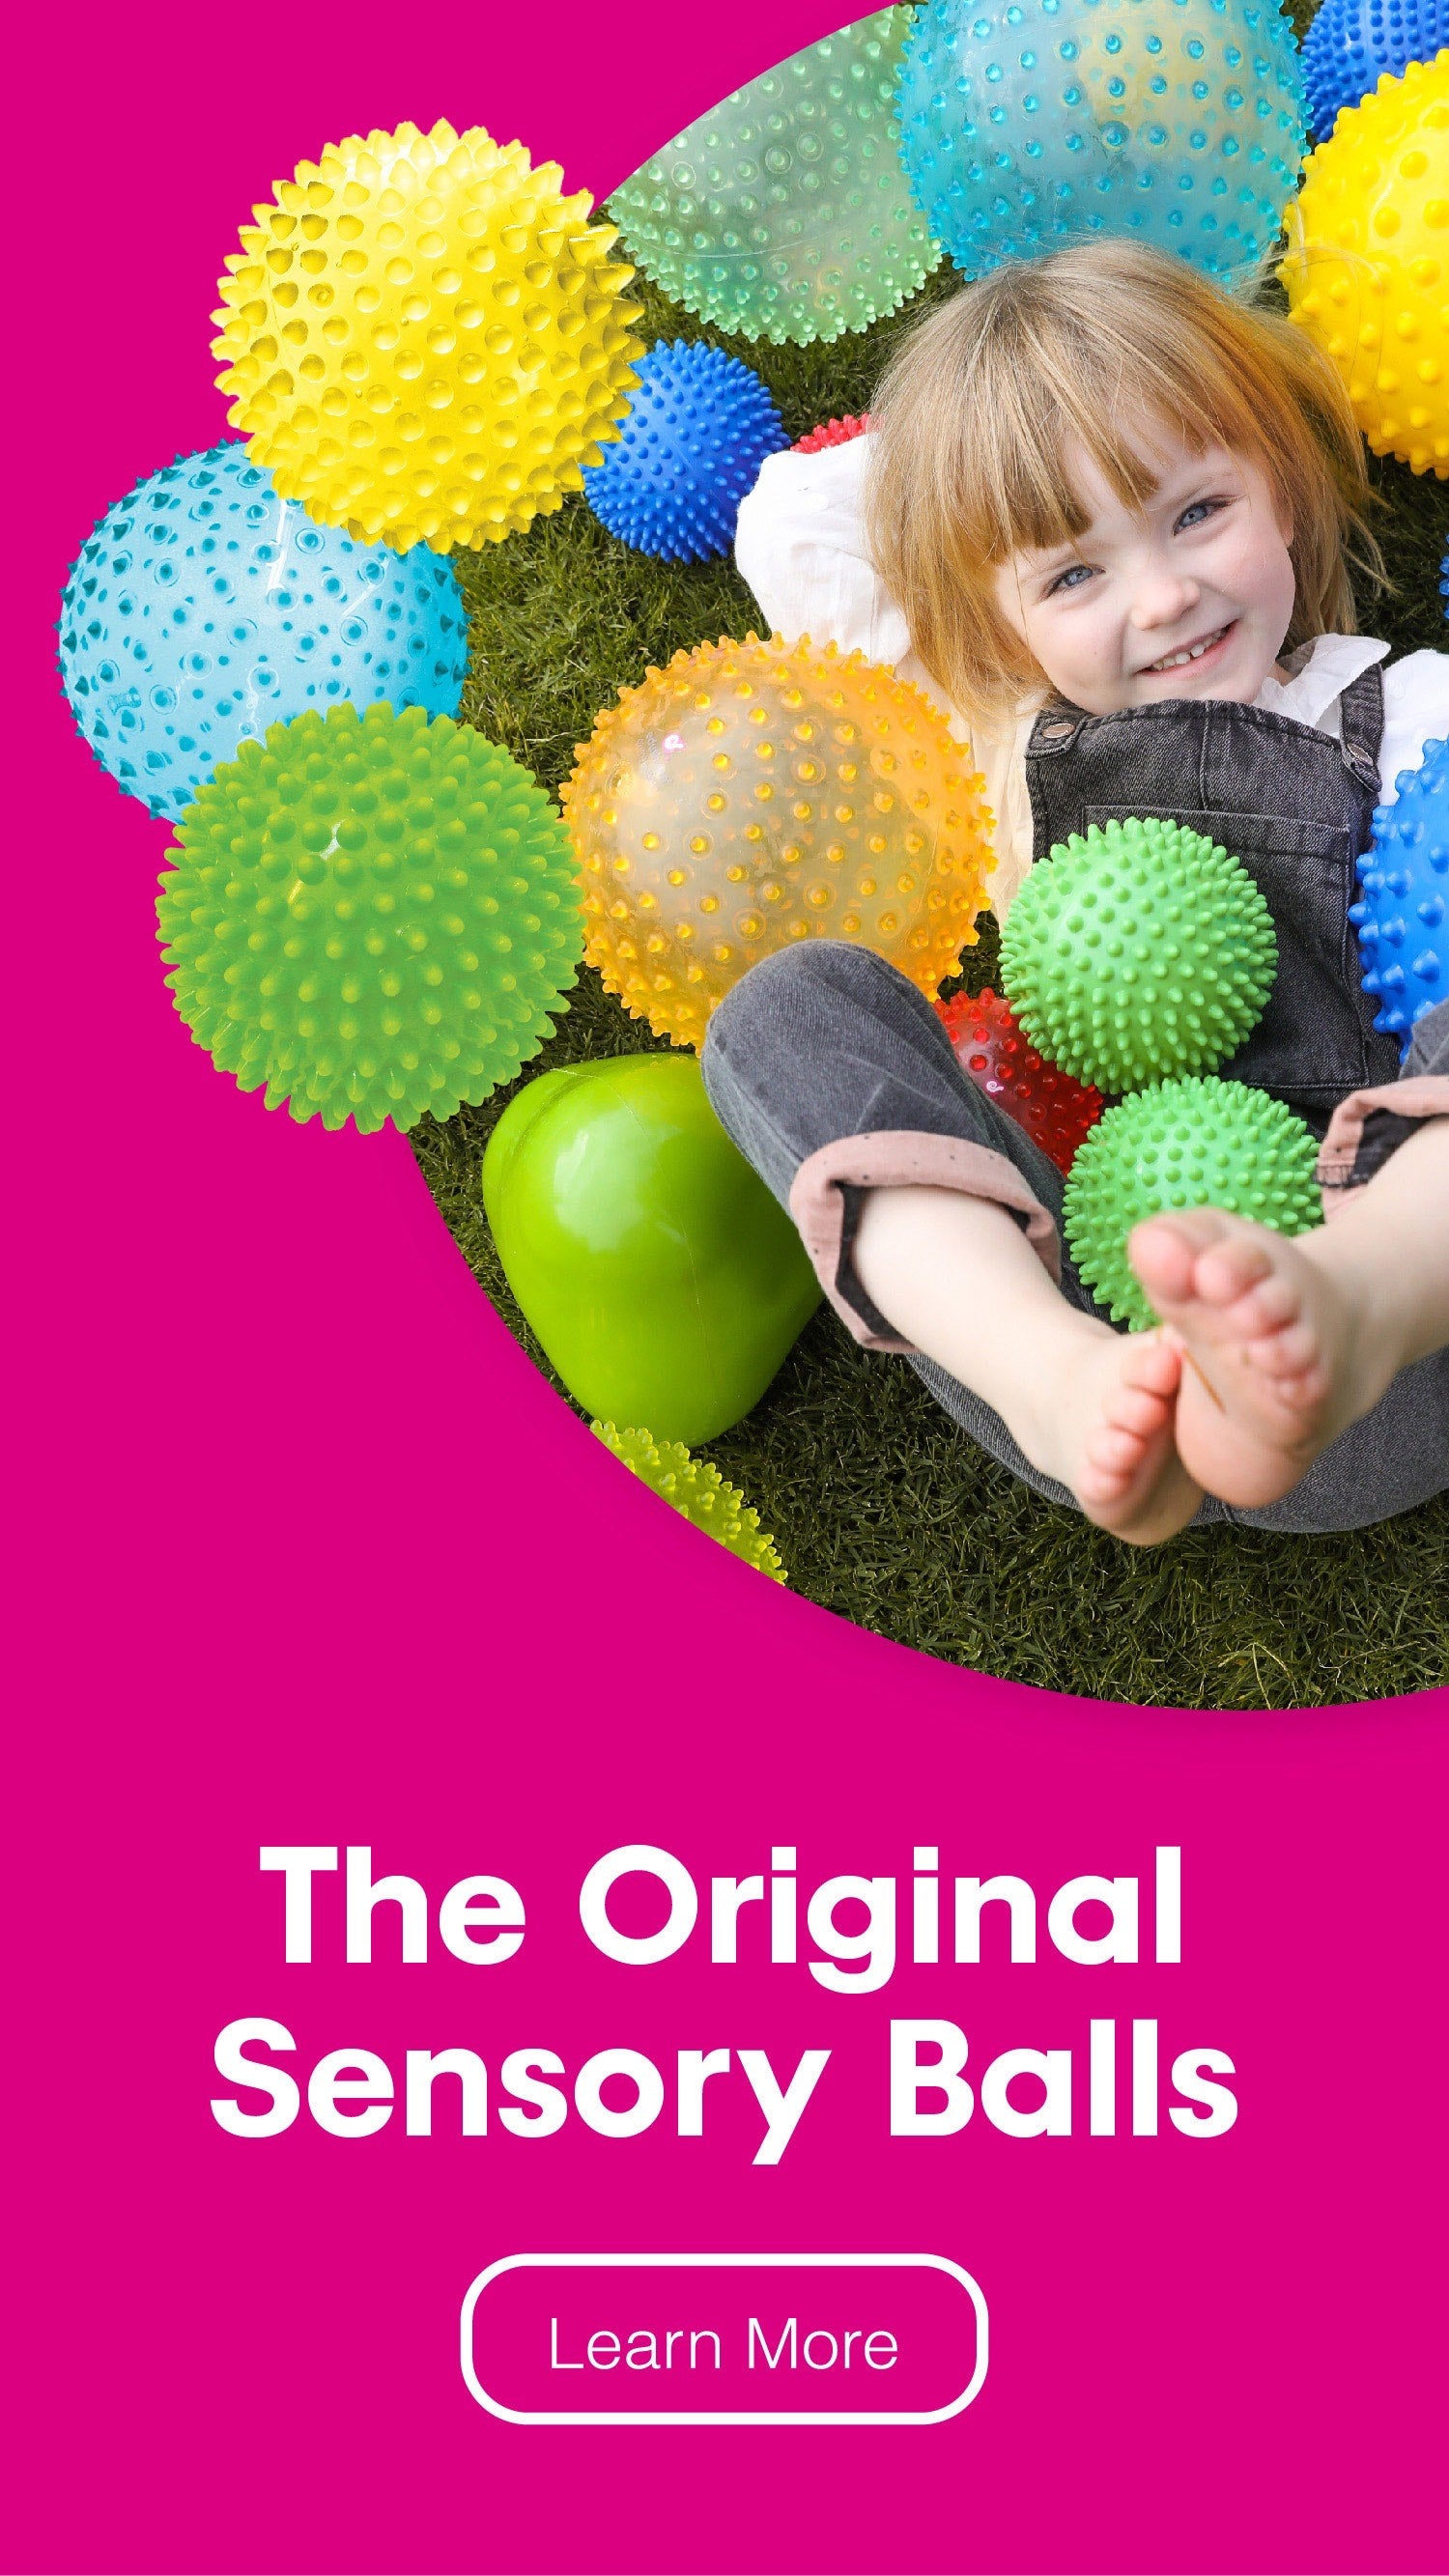 Original sensory balls for kids